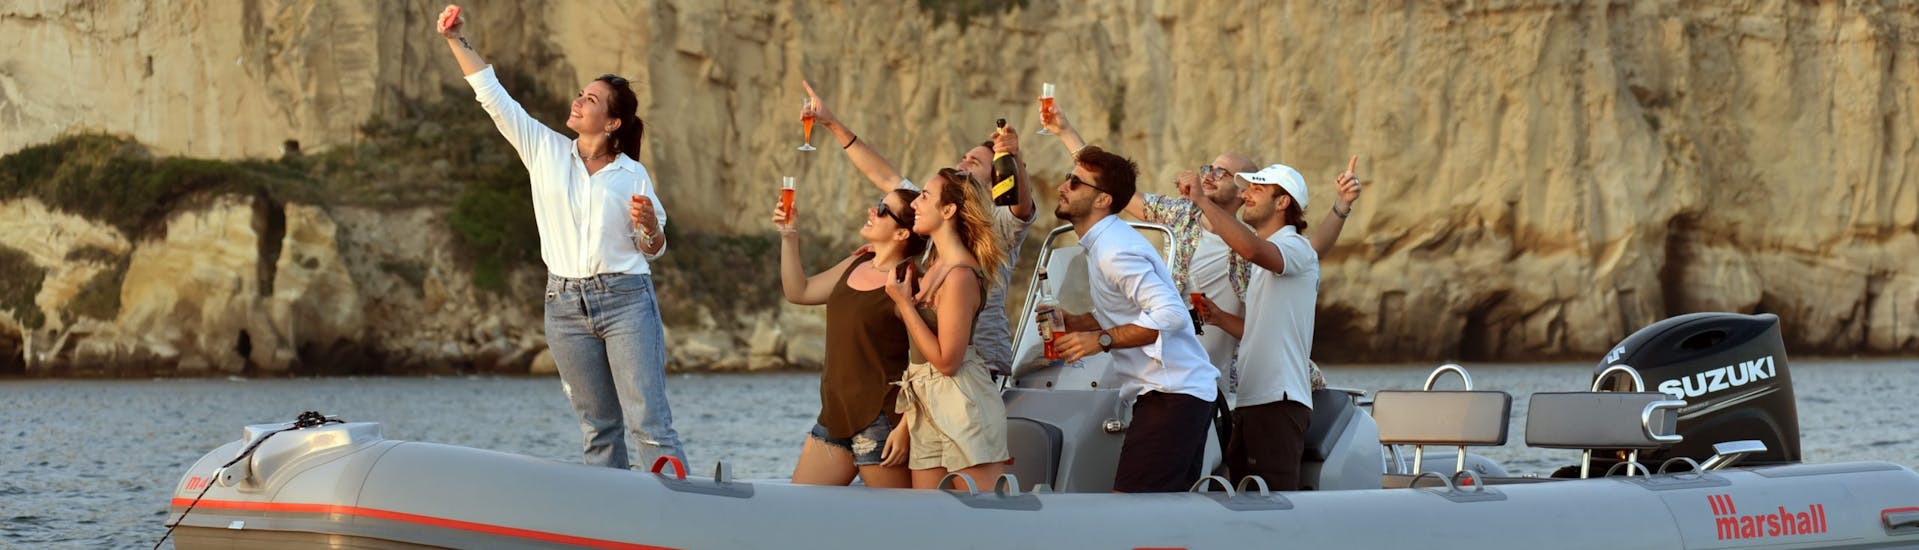 Les gens sur le bateau s'amusent pendant Balade privée en bateau semi-rigide au coucher du soleil depuis Naples, le long de la côte, avec Apéritif avec Seaside Napoli.